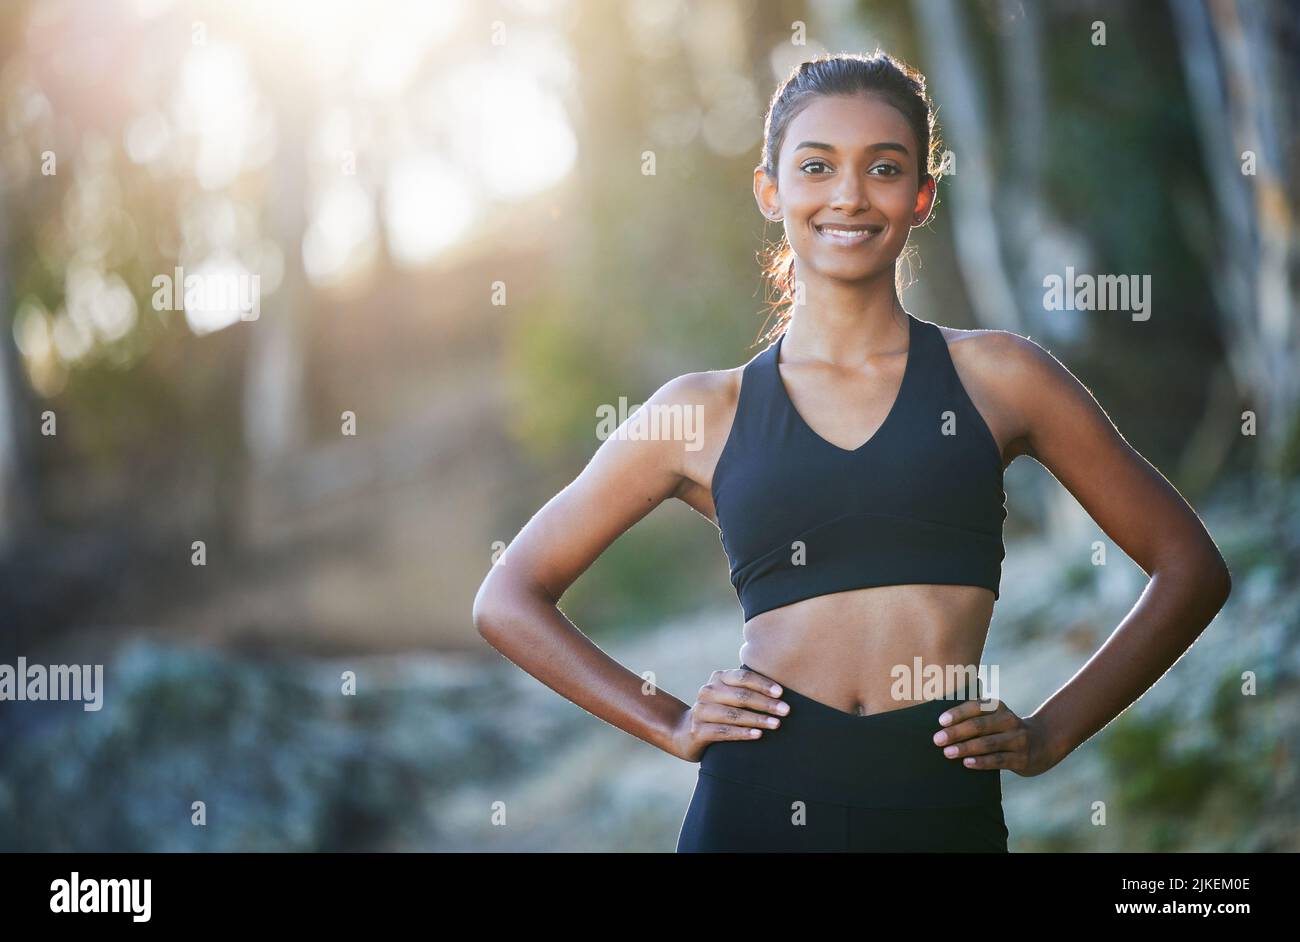 Ein morgendlicher Lauf erfrischt mich vollständig. Porträt einer sportlichen jungen Frau, die im Freien trainiert. Stockfoto